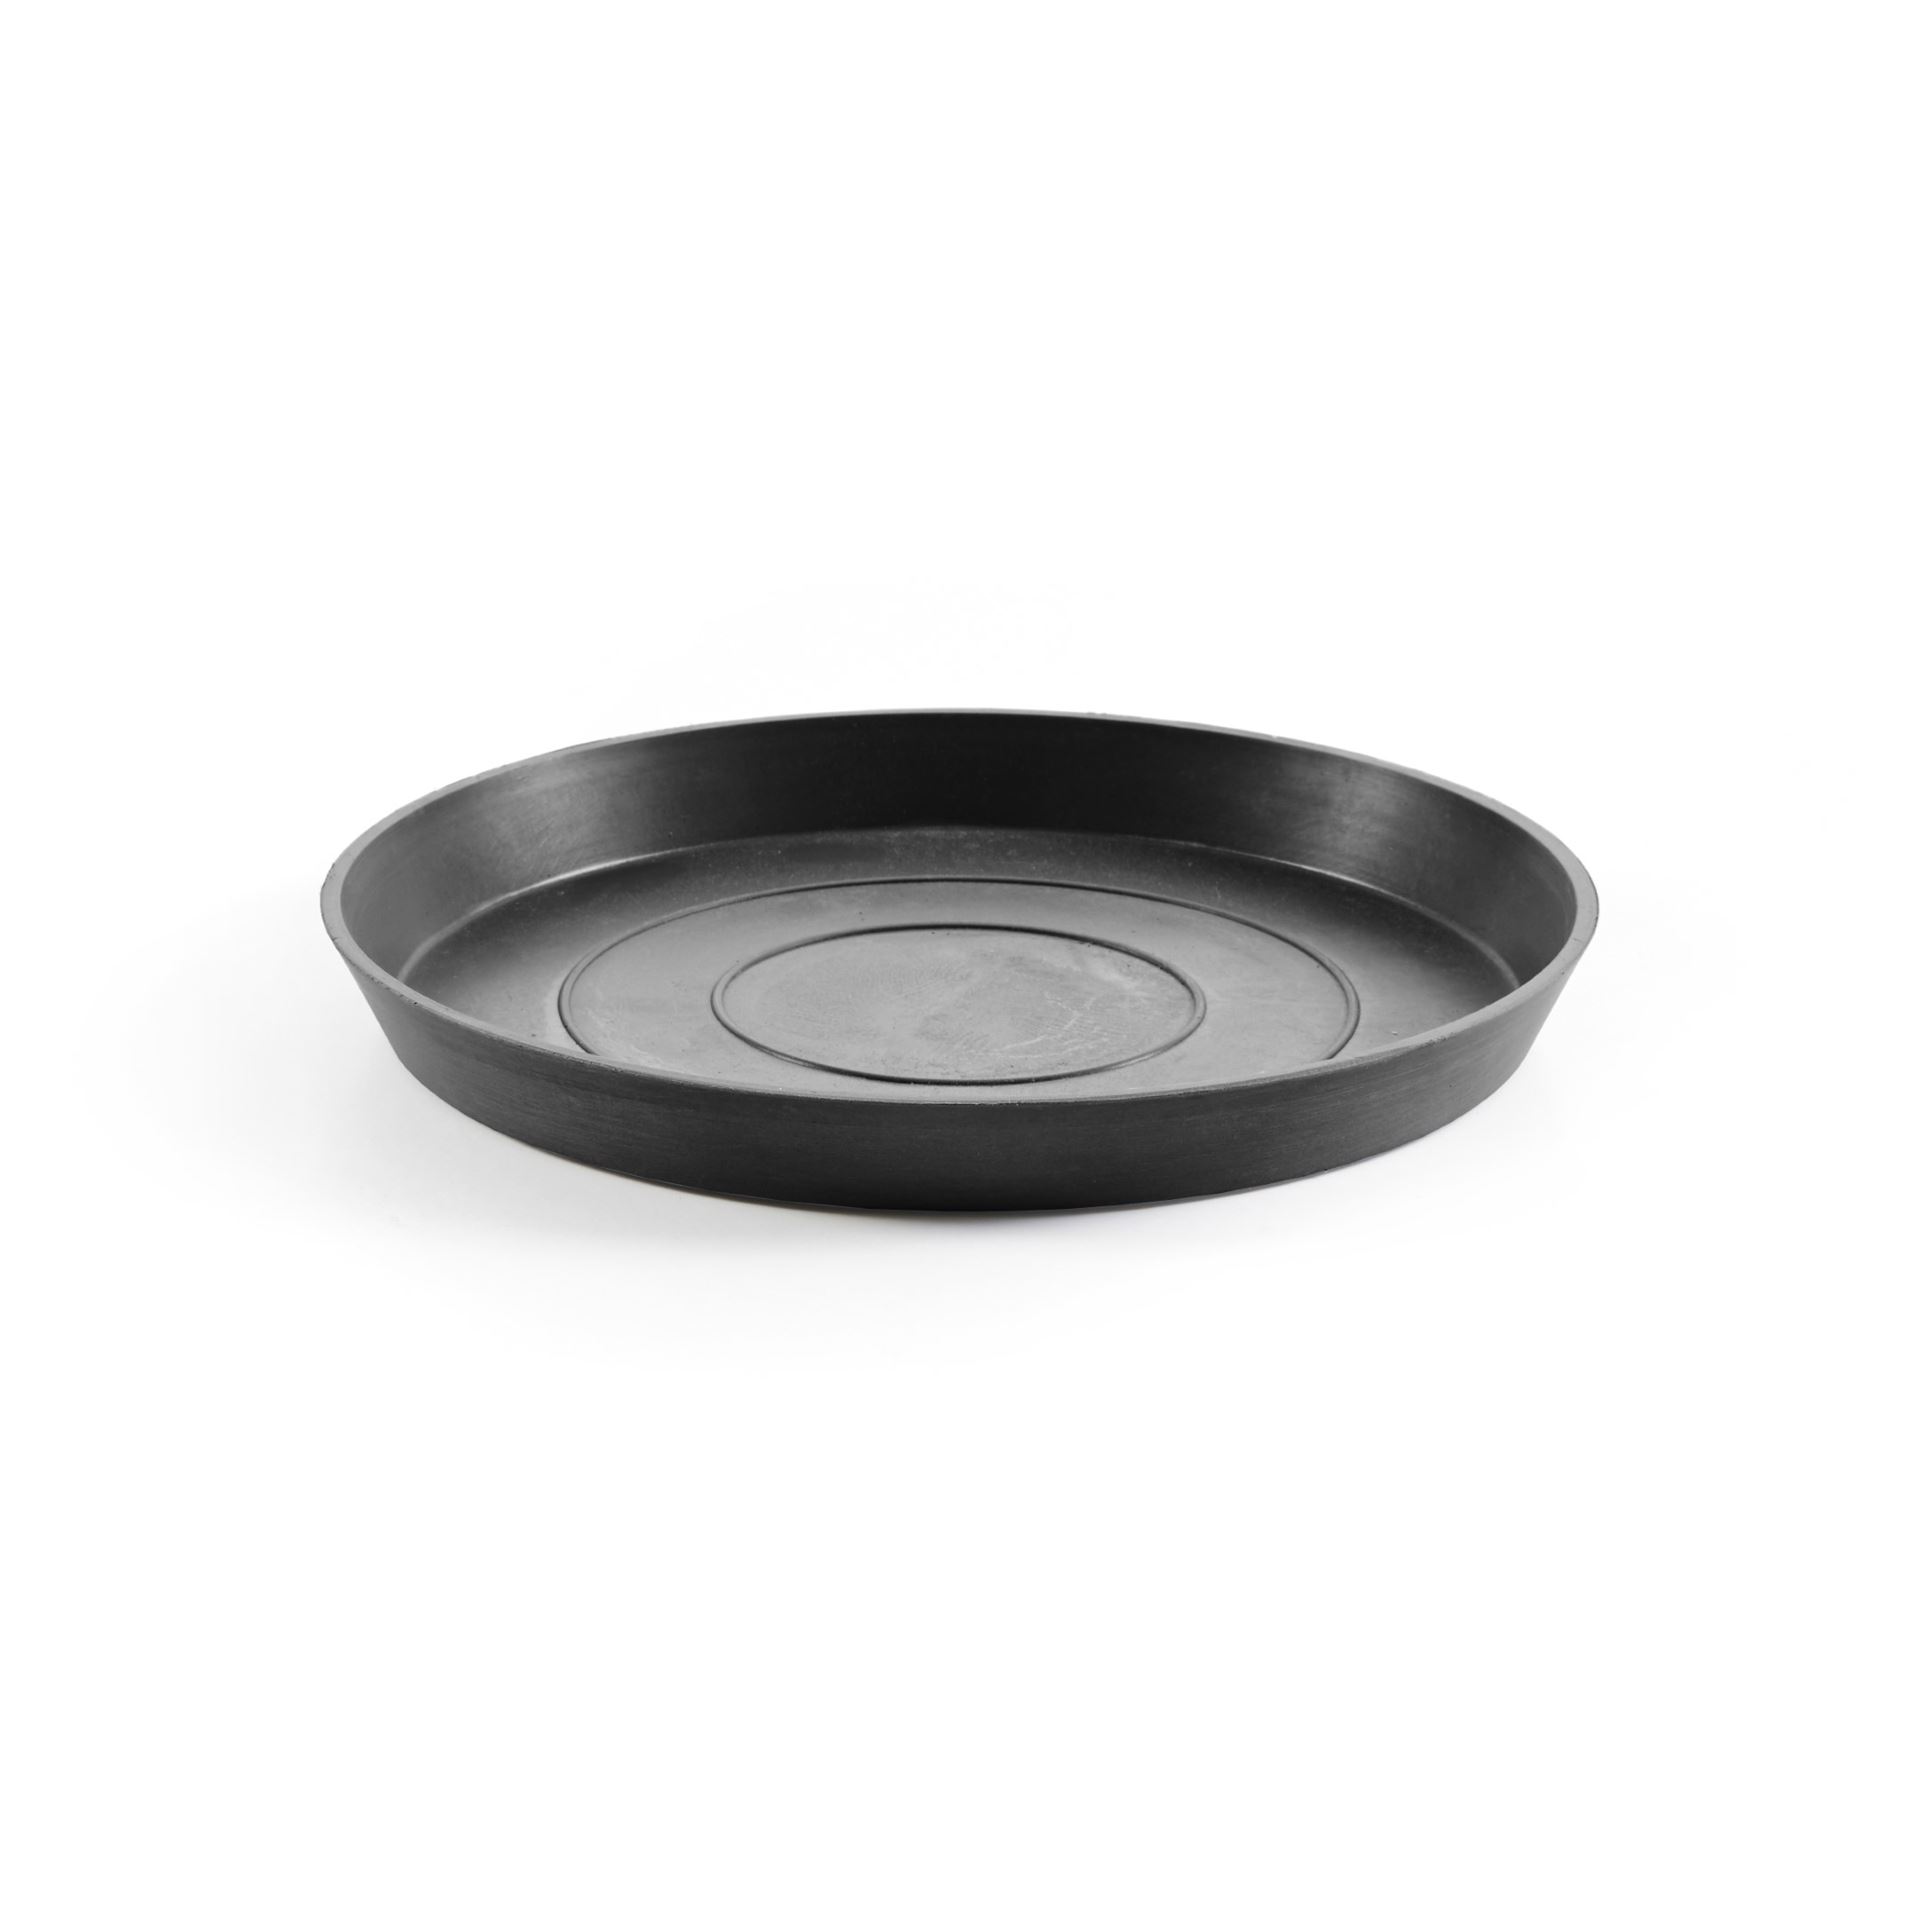 Ecopots Saucer Round - Dark Grey - Ø28,7 x H3 cm - Round dark grey saucer with water reservoir